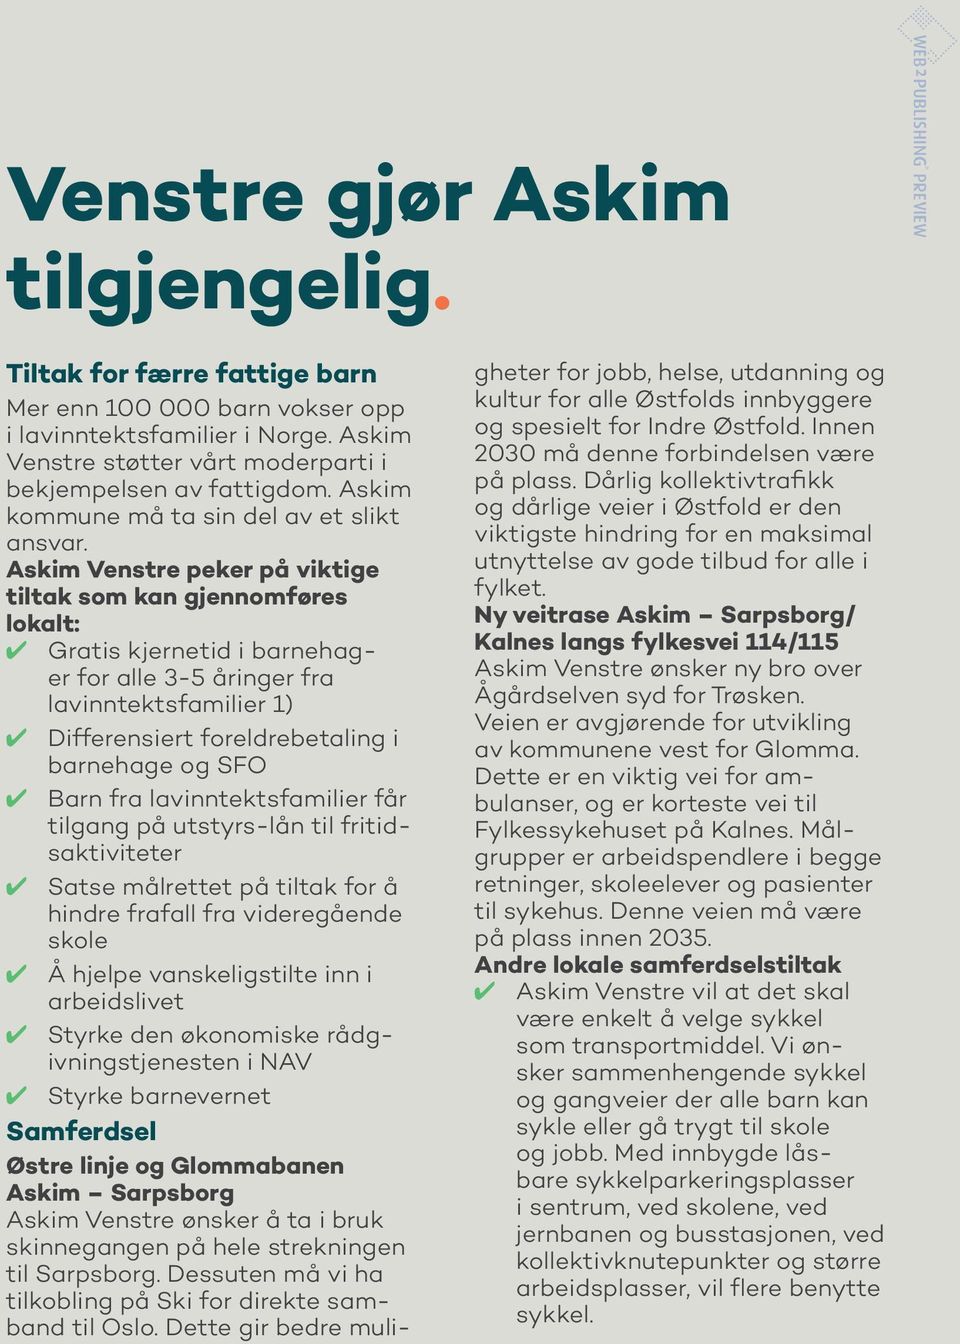 Askim Venstre peker på viktige tiltak som kan gjennomføres lokalt: Gratis kjernetid i barnehager for alle 3-5 åringer fra lavinntektsfamilier 1) Differensiert foreldrebetaling i barnehage og SFO Barn